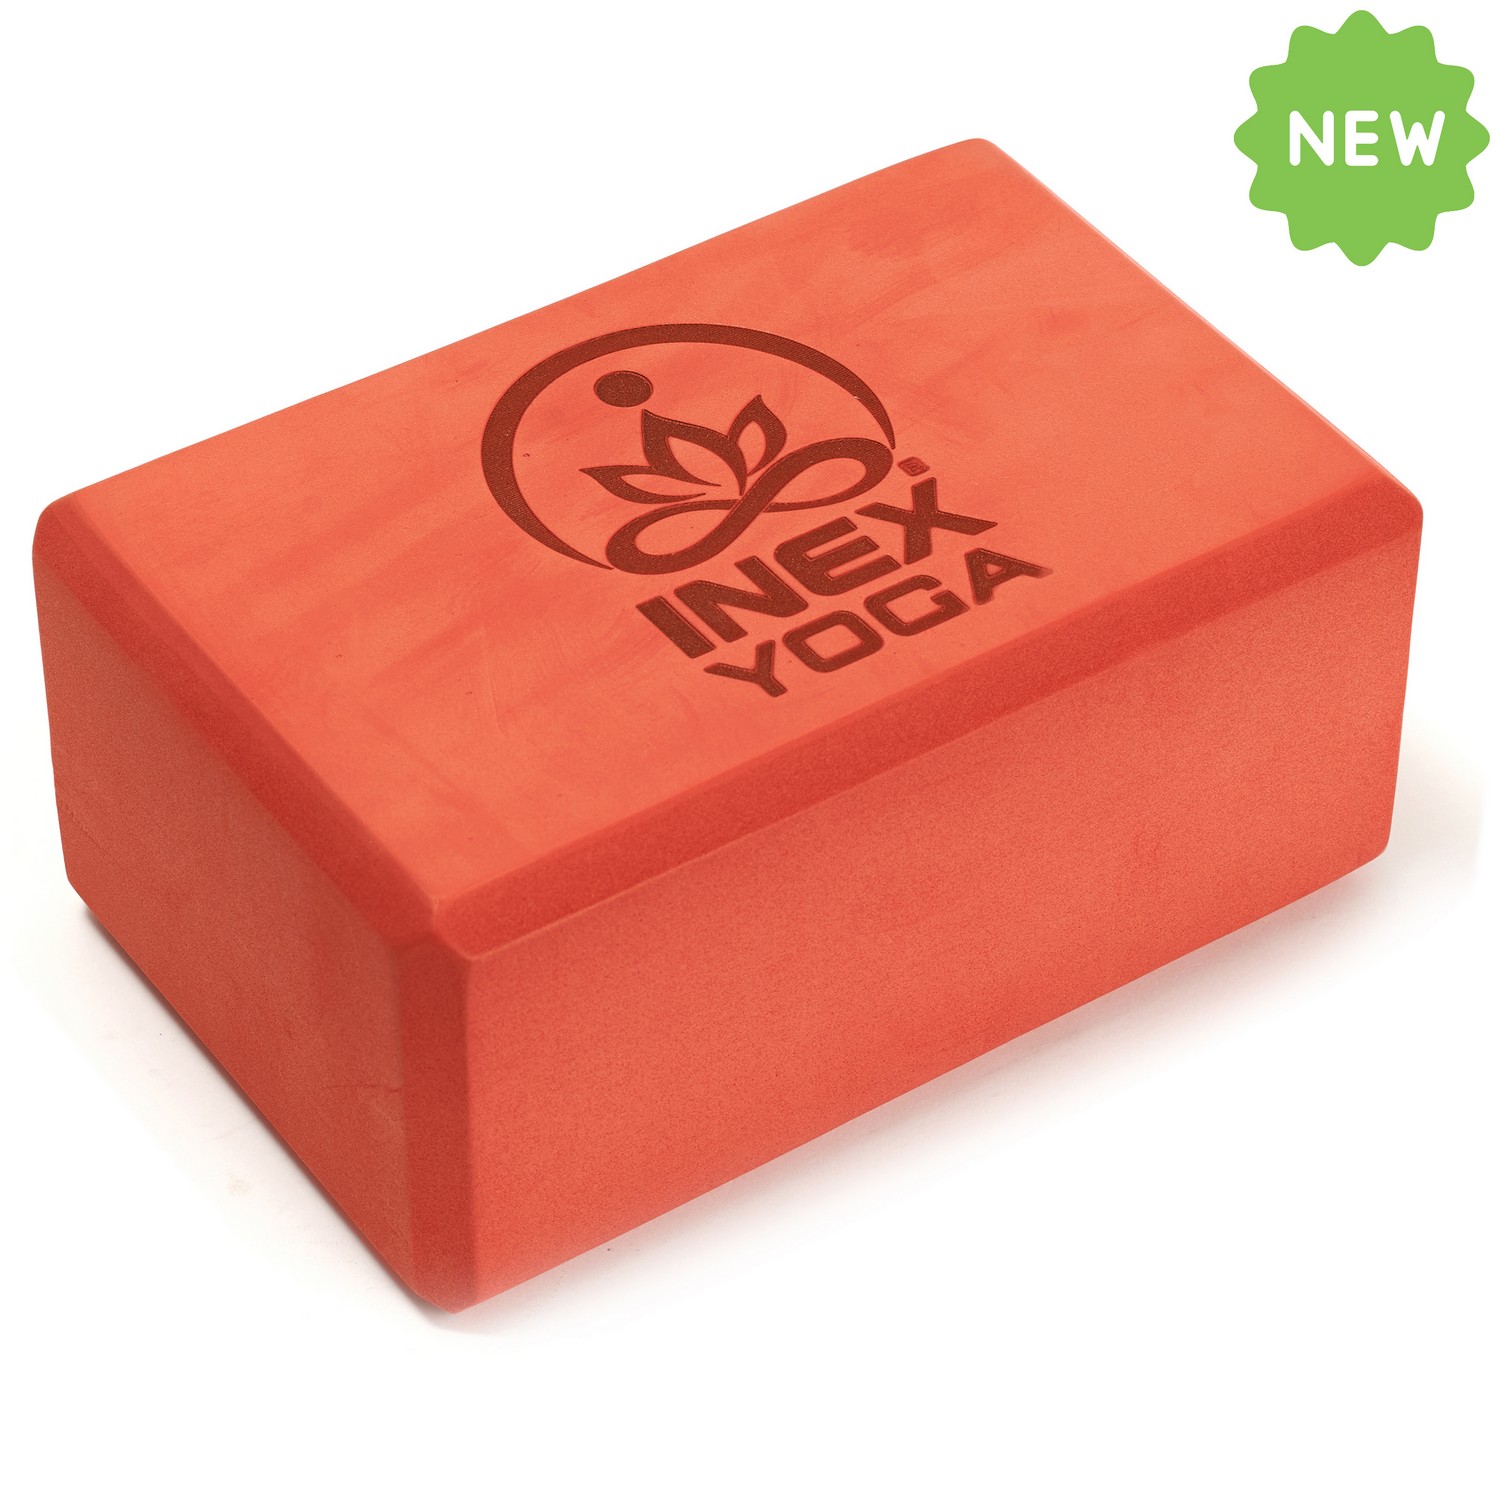 Блок для йоги Intex EVA Yoga Block YGBK-RD 23x15x10 см, красный,  - купить со скидкой